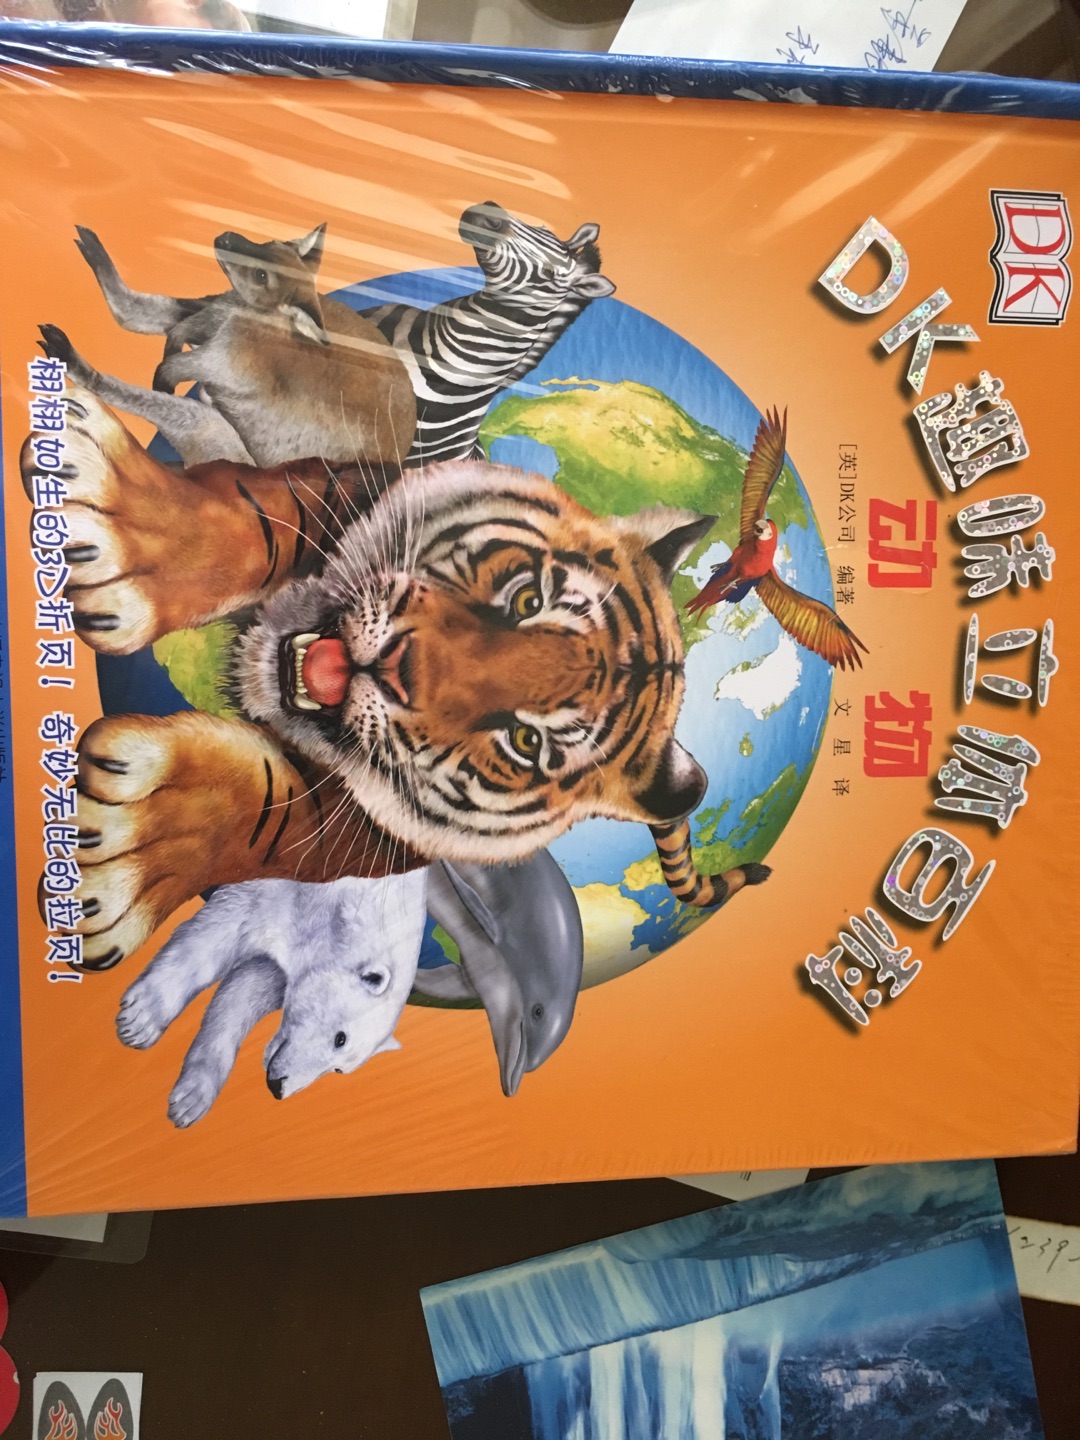 书很棒，讲了很多动物的知识，给小孩增长知识用的，彩页加立体的设计很适合小孩阅读。